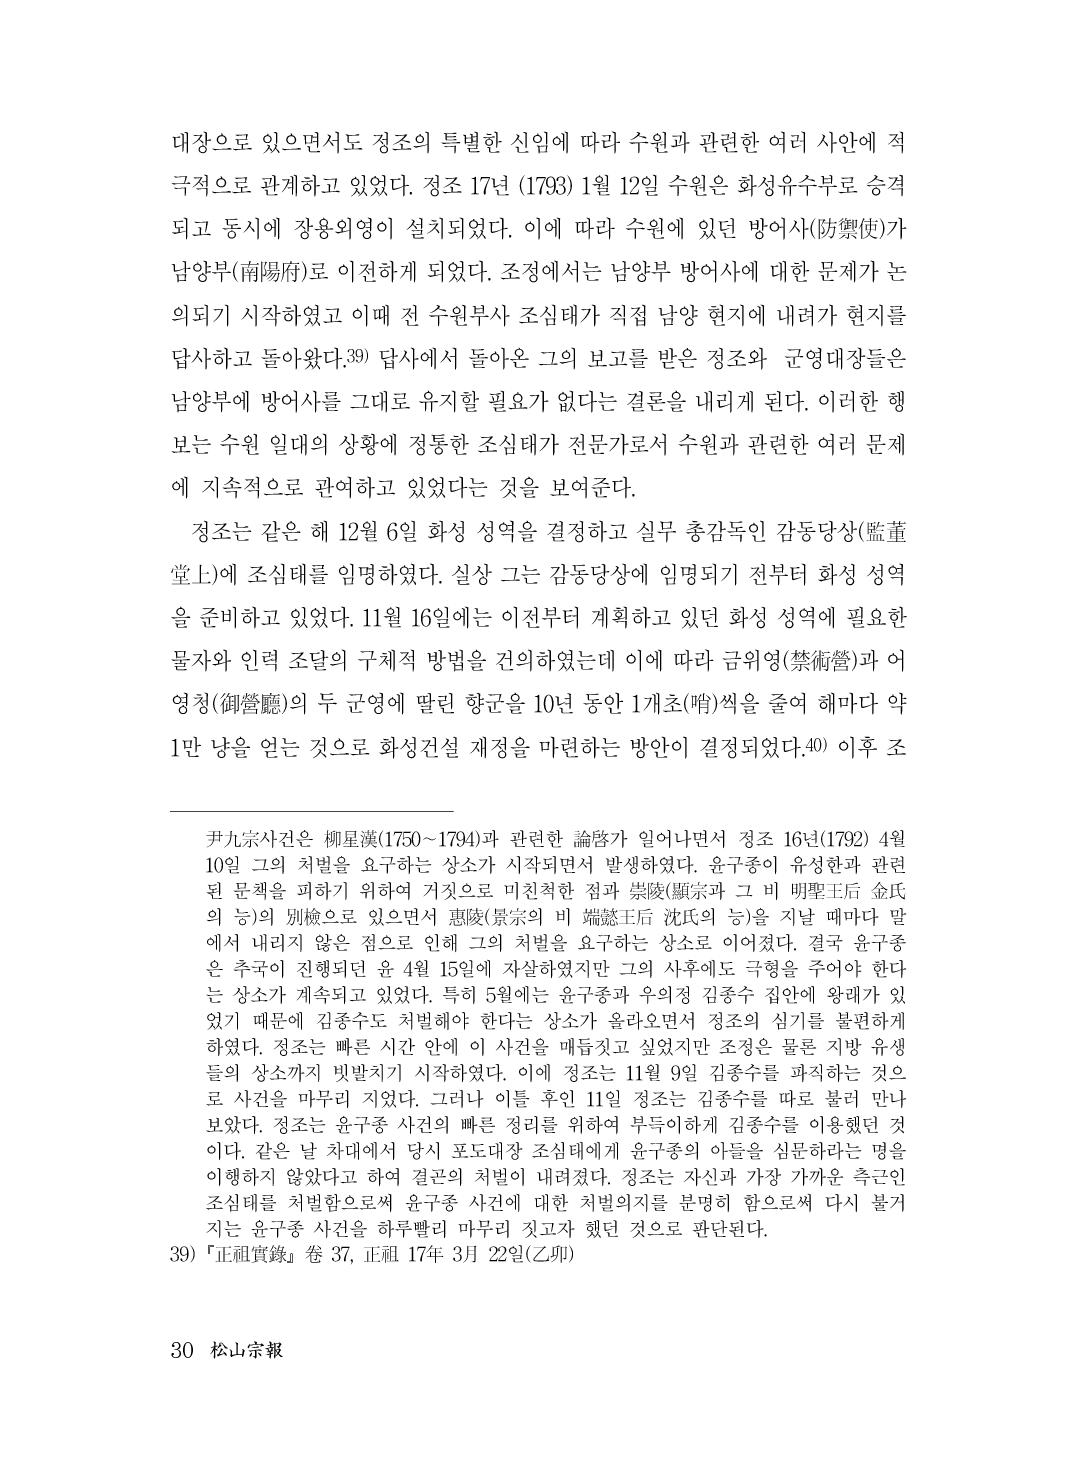 (전체) 송산종보(27호)(최종)_31.jpg